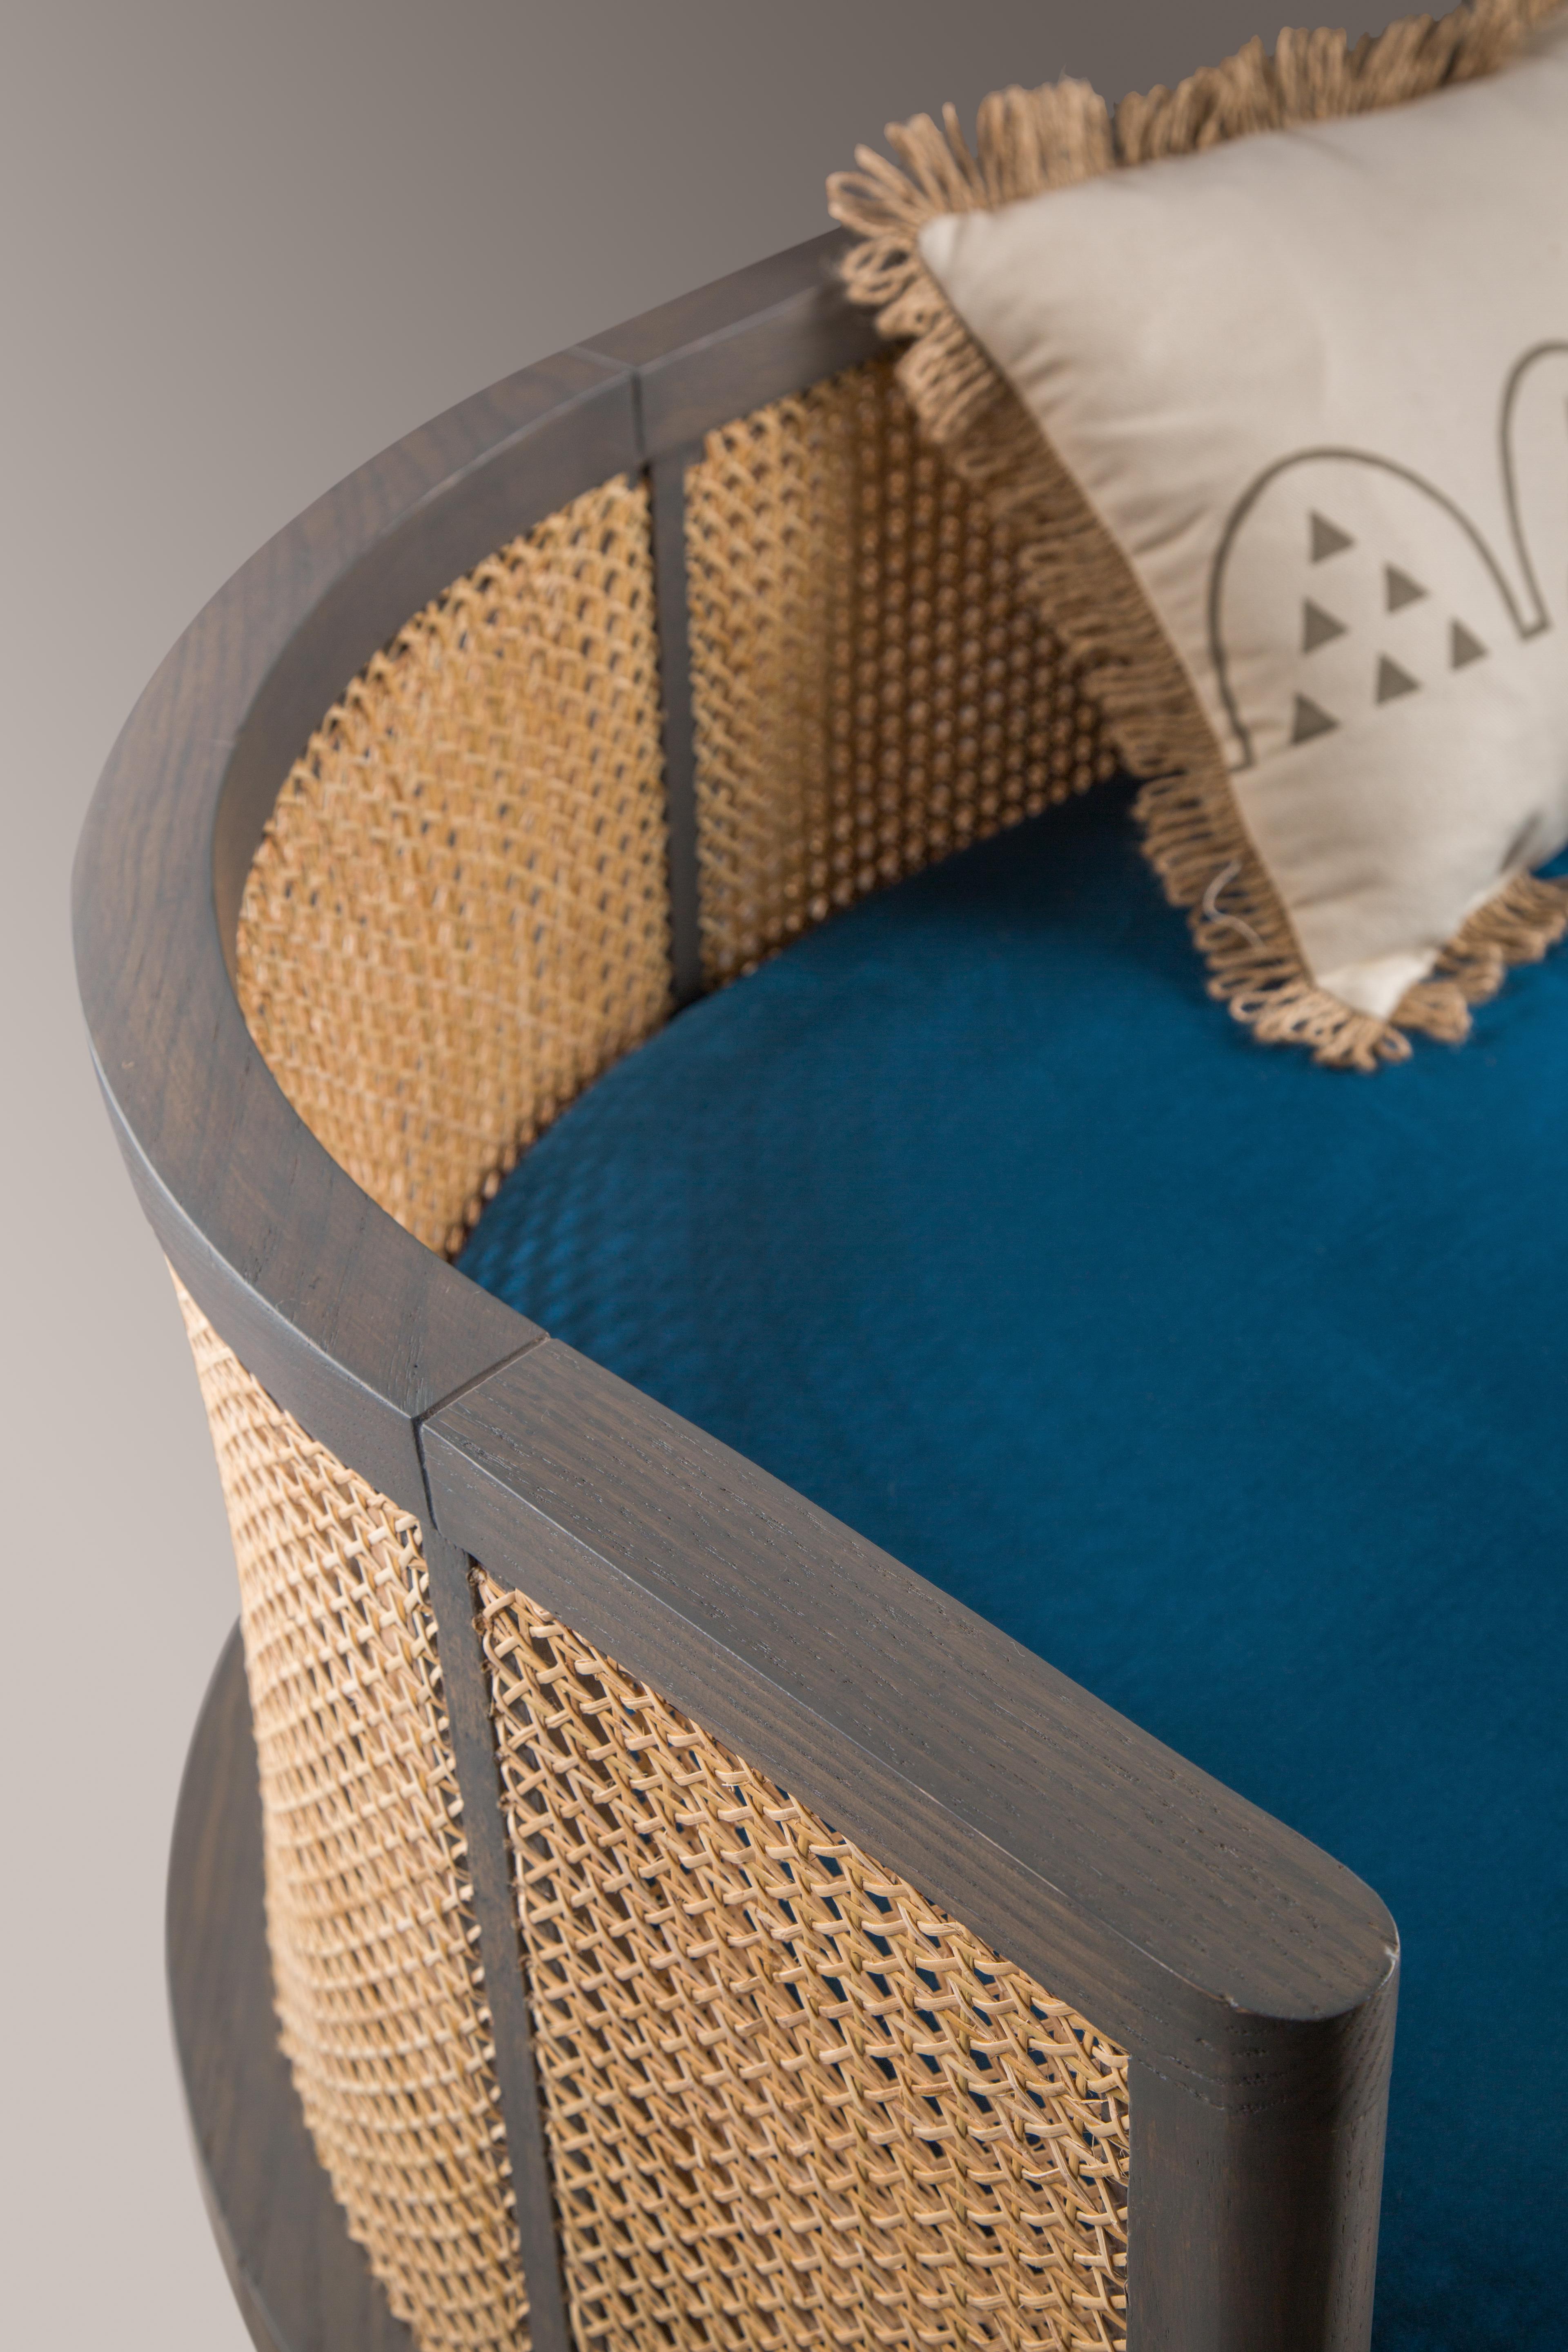 velvet and wood upholstery